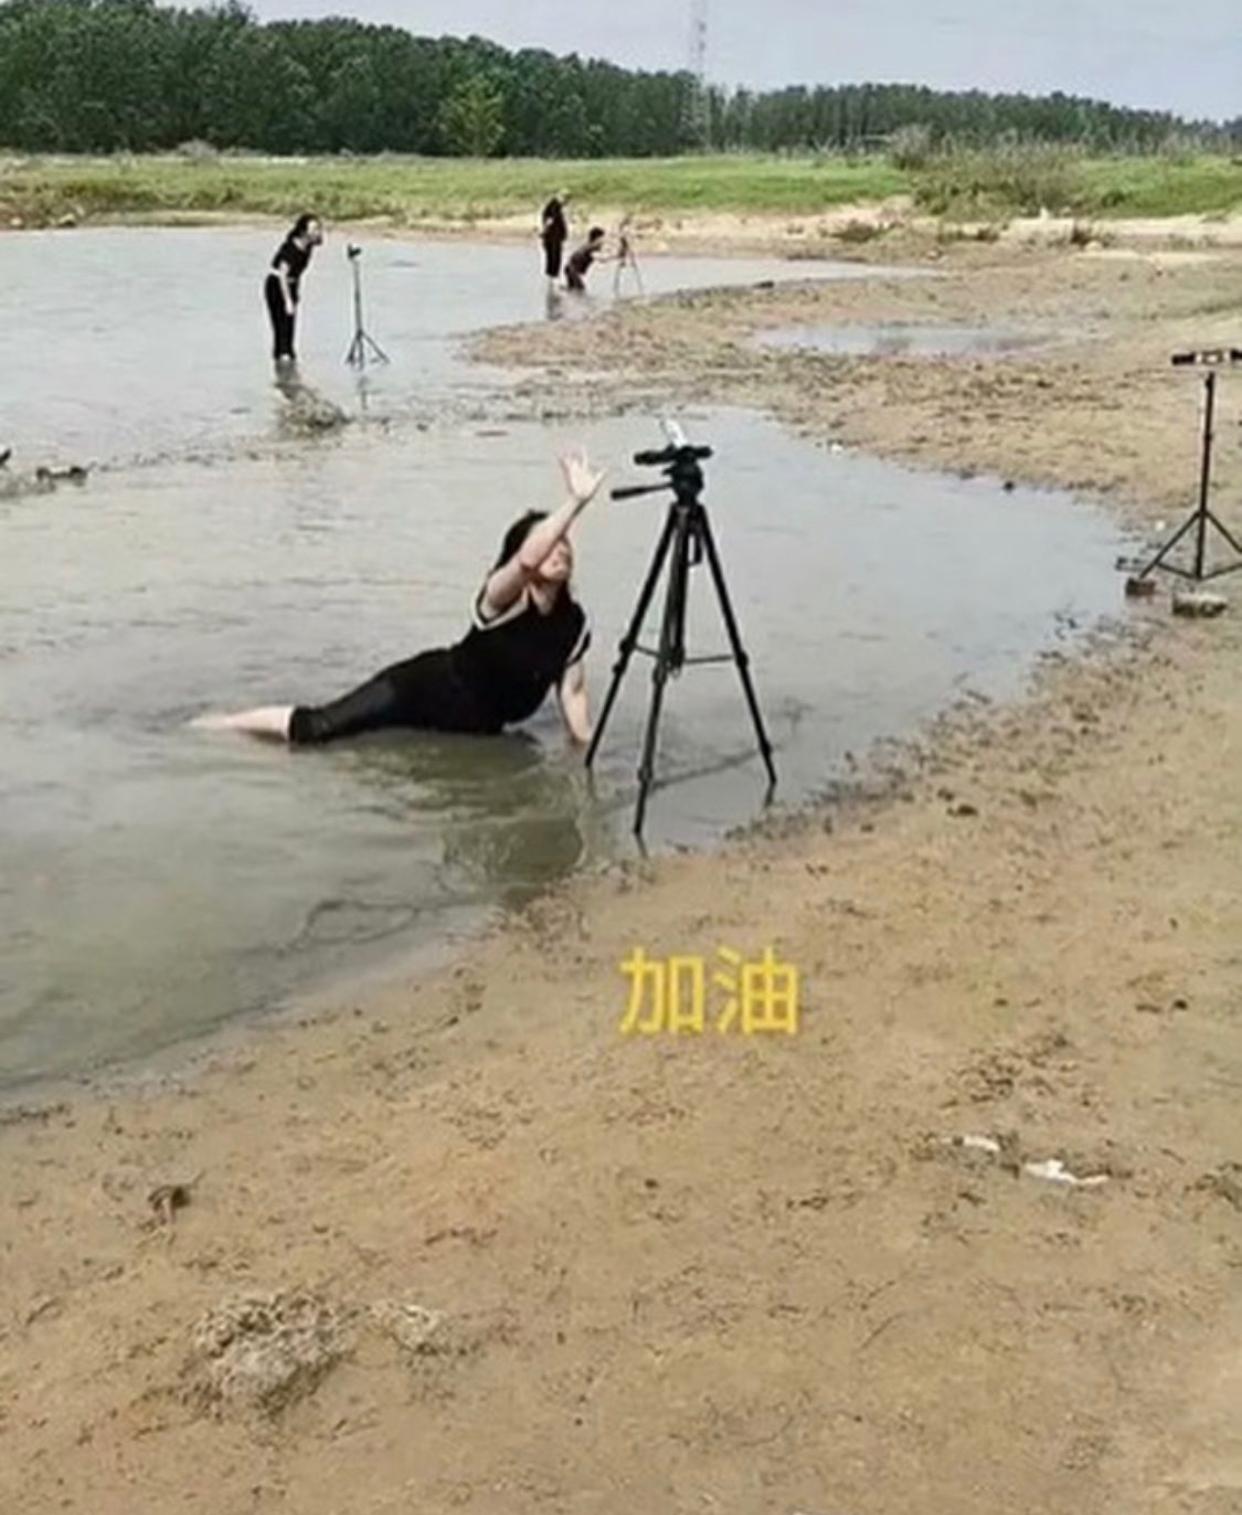 imulated Drowning. Zhengzhou Floods, 2021, China